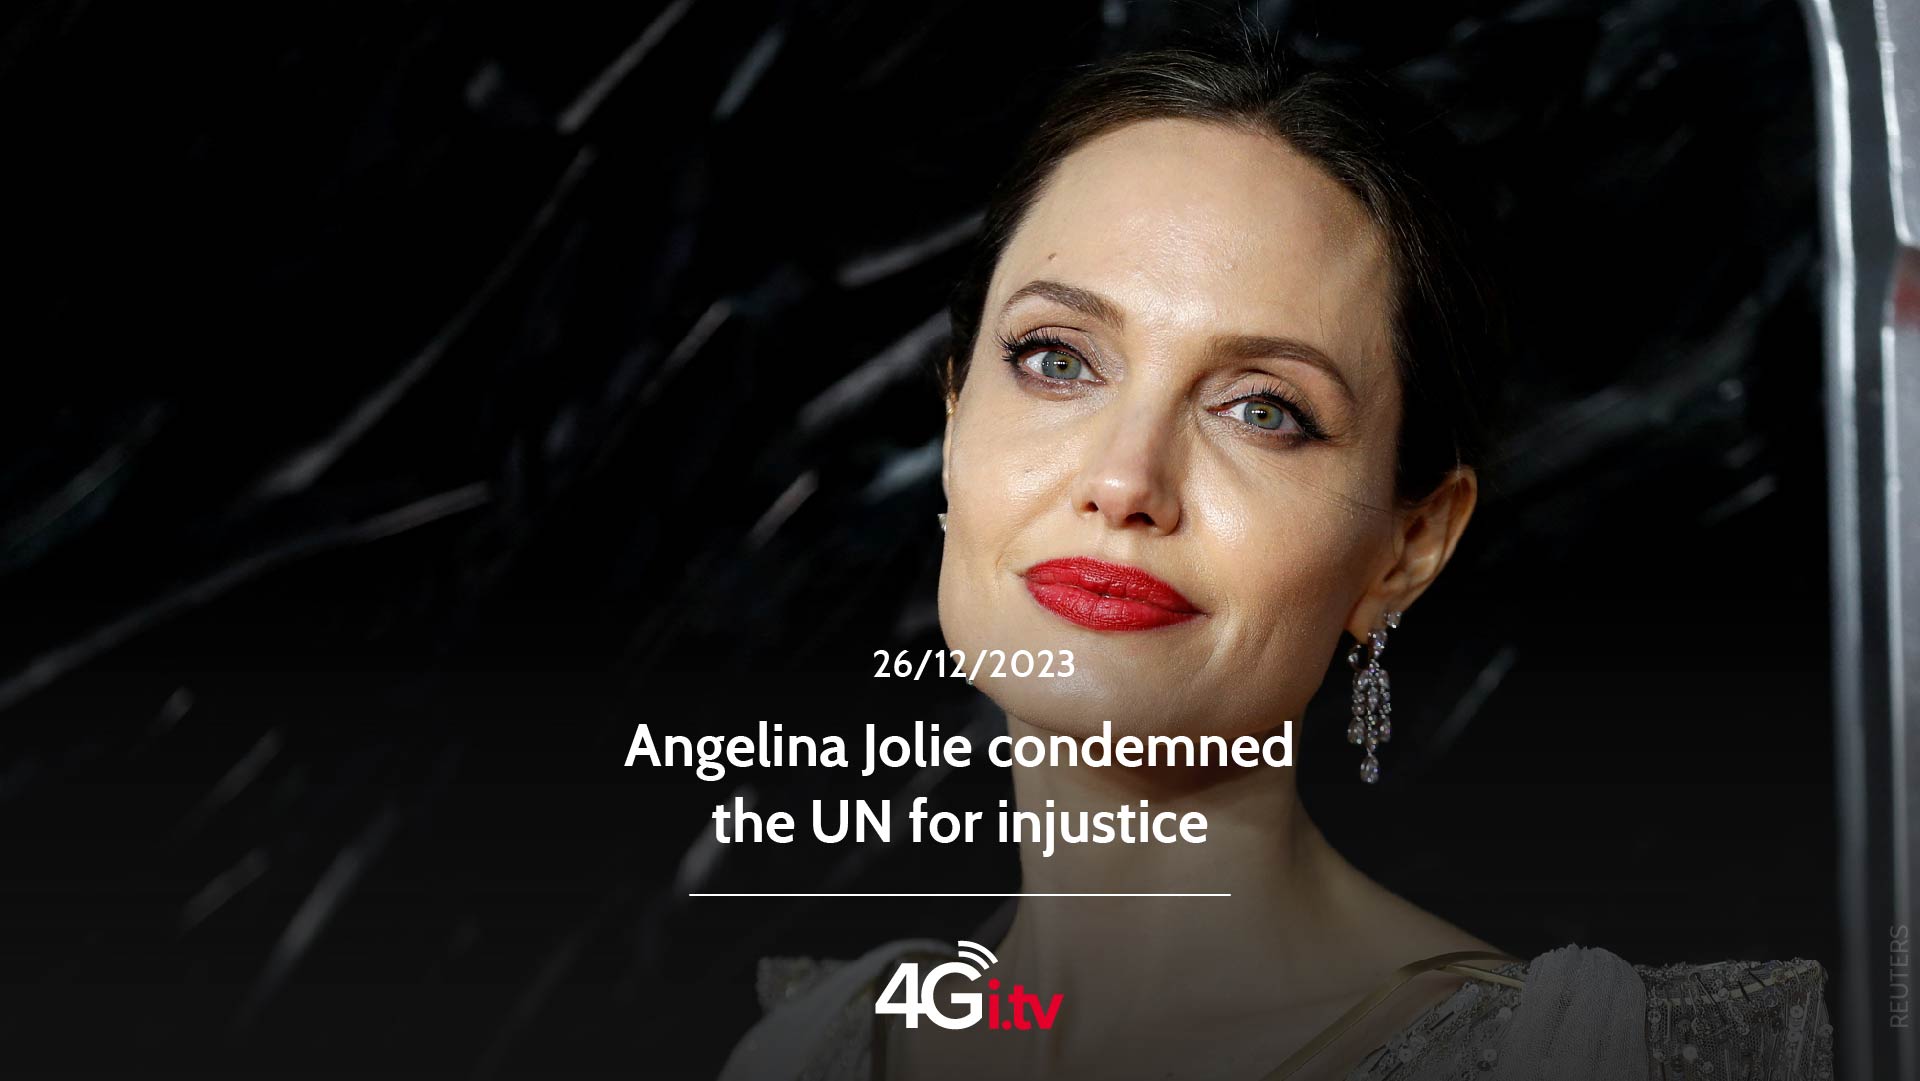 Lesen Sie mehr über den Artikel Angelina Jolie condemned the UN for injustice